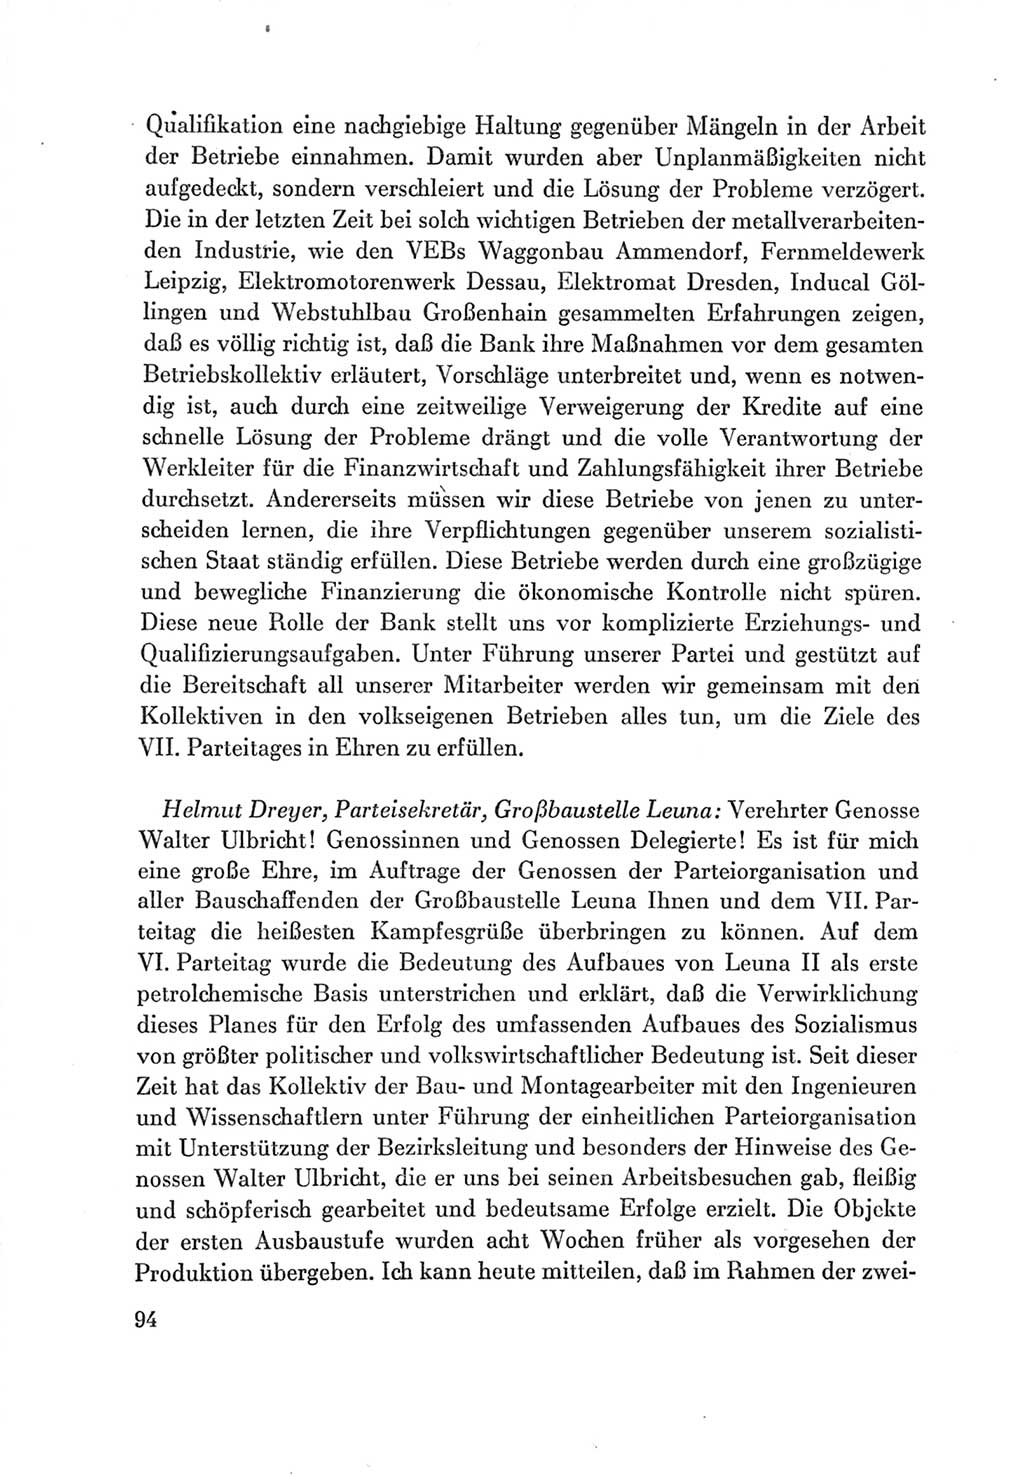 Protokoll der Verhandlungen des Ⅶ. Parteitages der Sozialistischen Einheitspartei Deutschlands (SED) [Deutsche Demokratische Republik (DDR)] 1967, Band Ⅲ, Seite 94 (Prot. Verh. Ⅶ. PT SED DDR 1967, Bd. Ⅲ, S. 94)